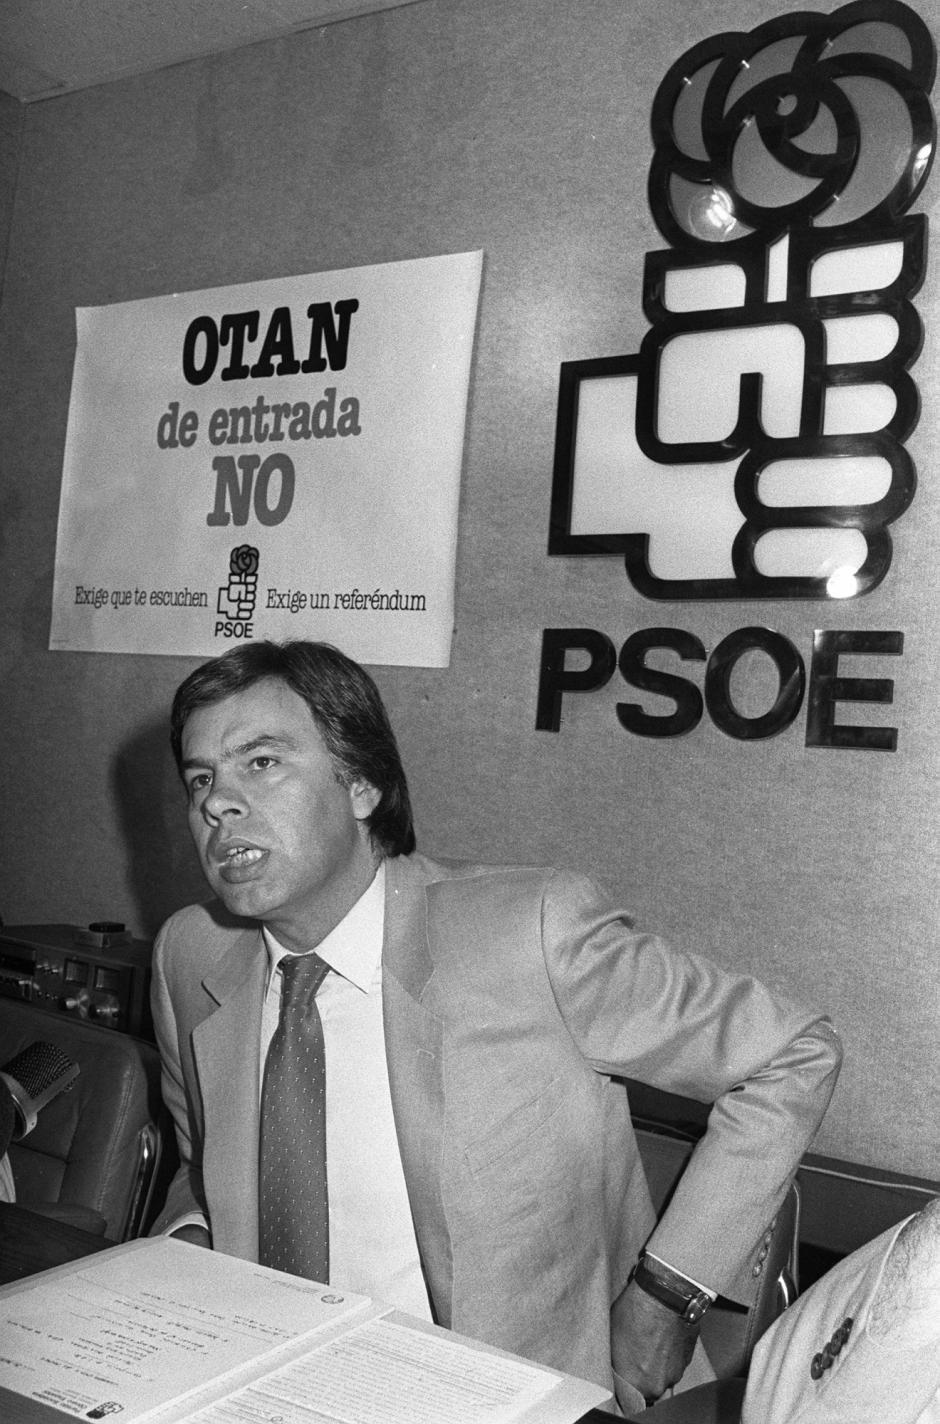 El PSOE de Felipe González inició una campaña para pedir un referéndum sobre la entrada de España en la OTAN